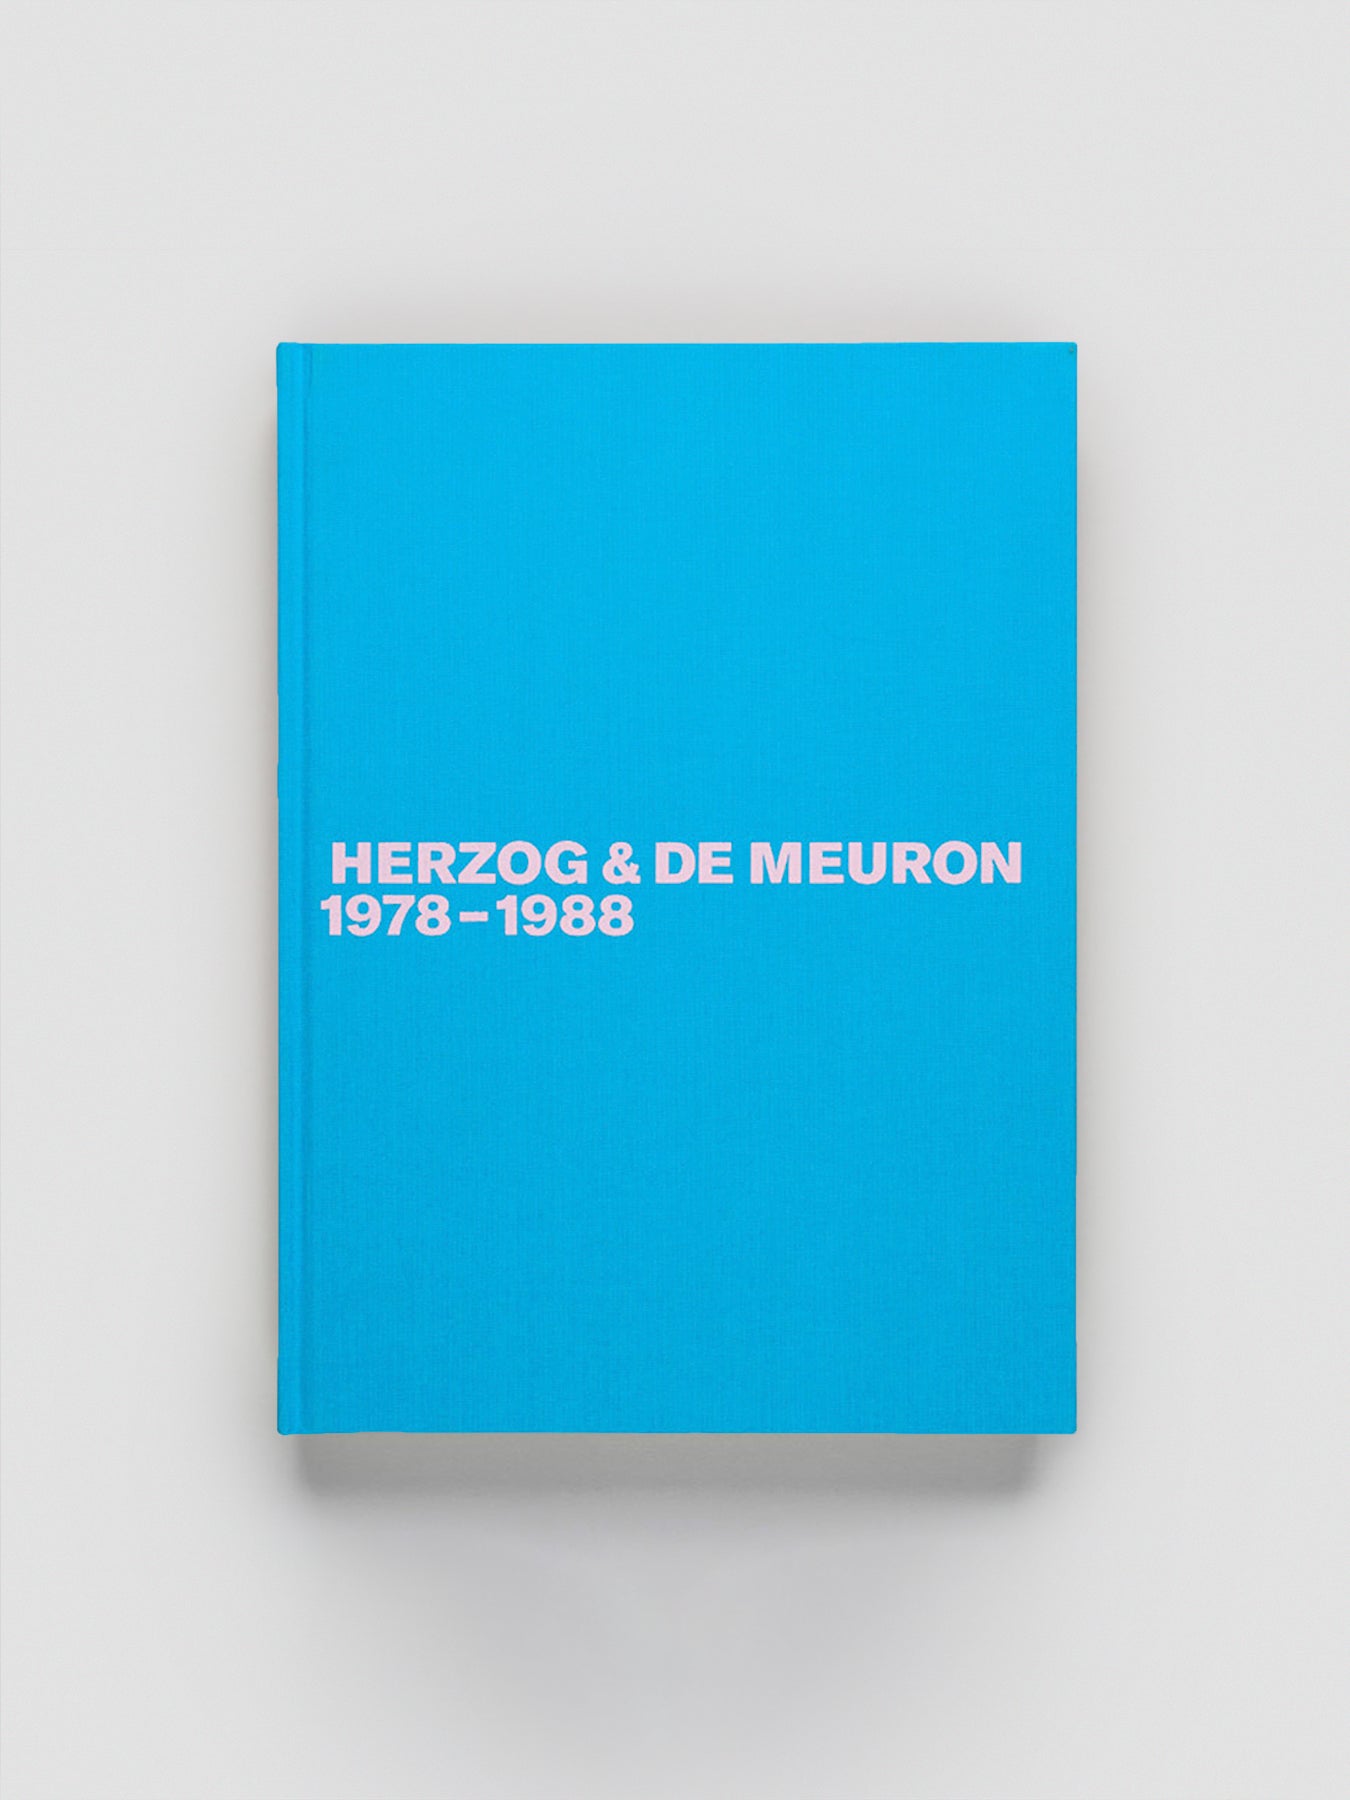 Herzog & de Meuron 1978-1988 Volume 1